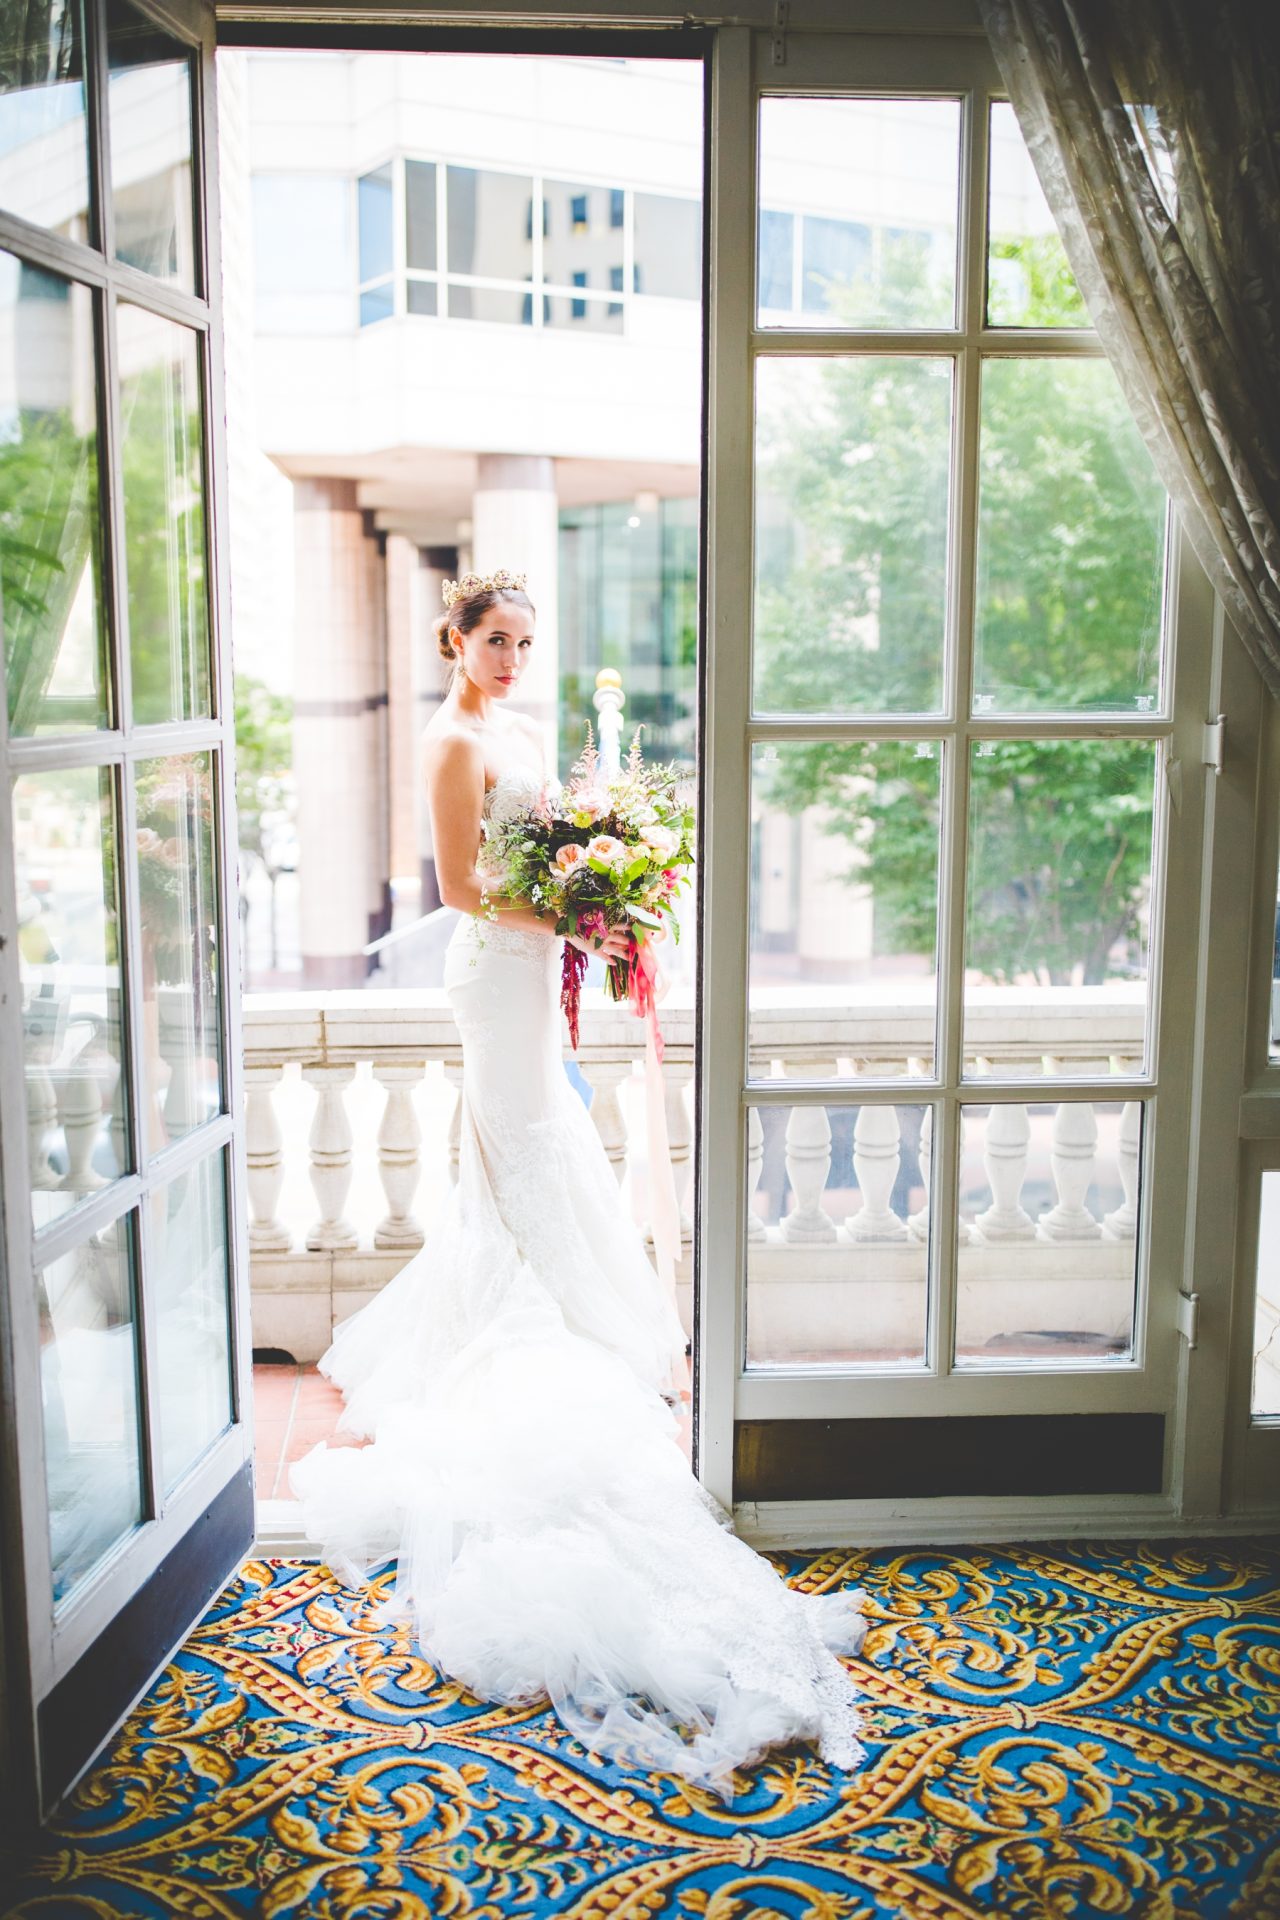 Bridal Portrait of Bride in Doorway, Hermitage Hotel Styled Wedding Shoot